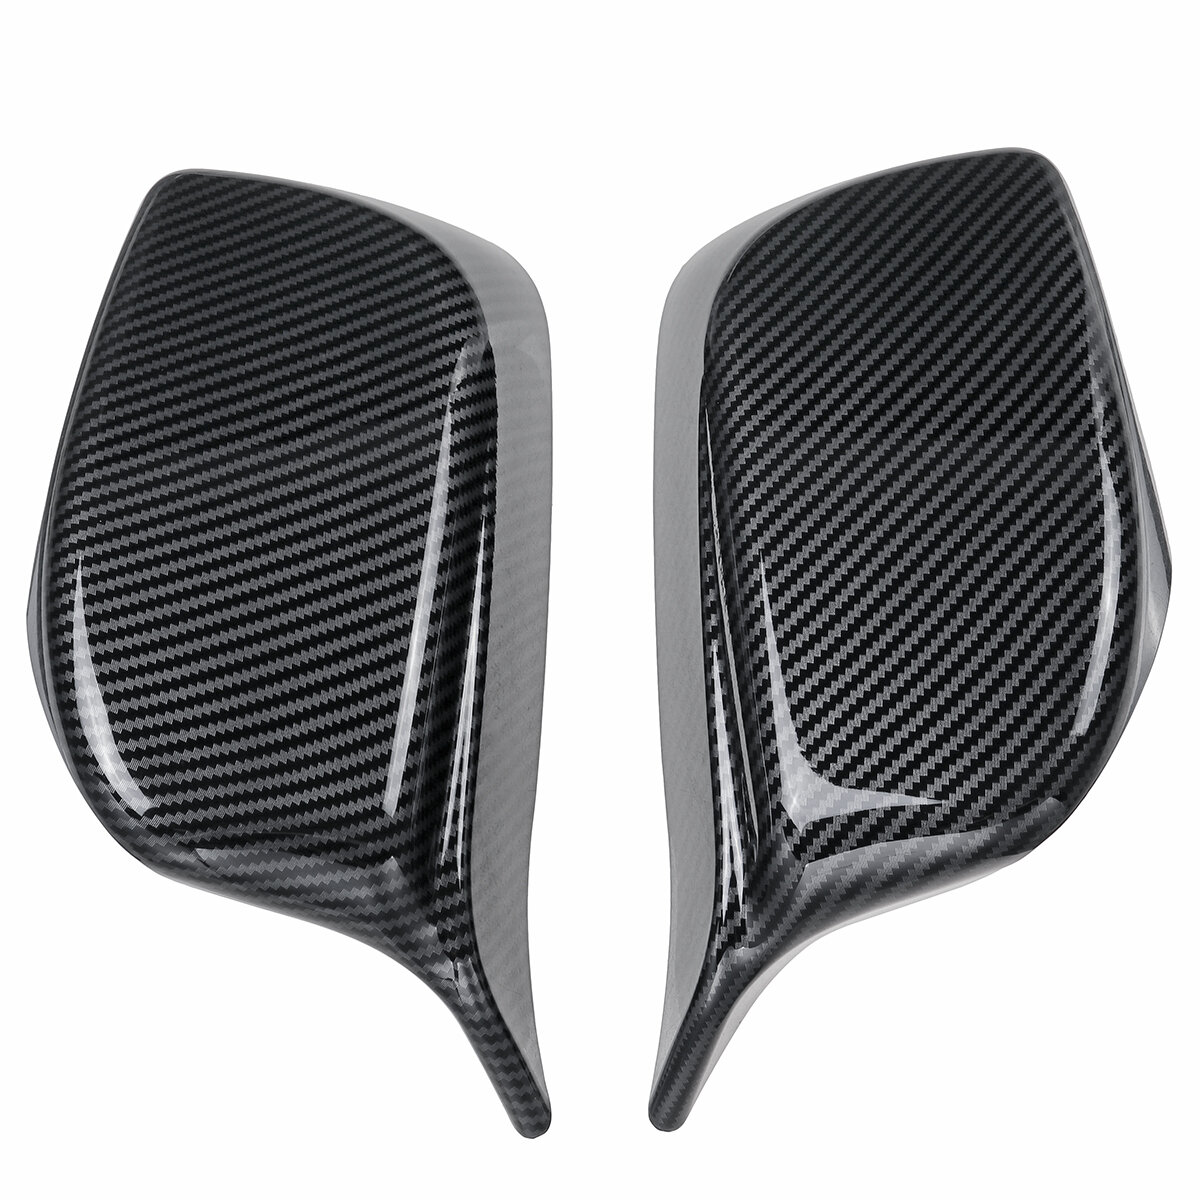 Voor BMW E60 E61 2003-2008 M Stijl Carbon Fiber Look Vervanging Zijspiegel Cover Caps: